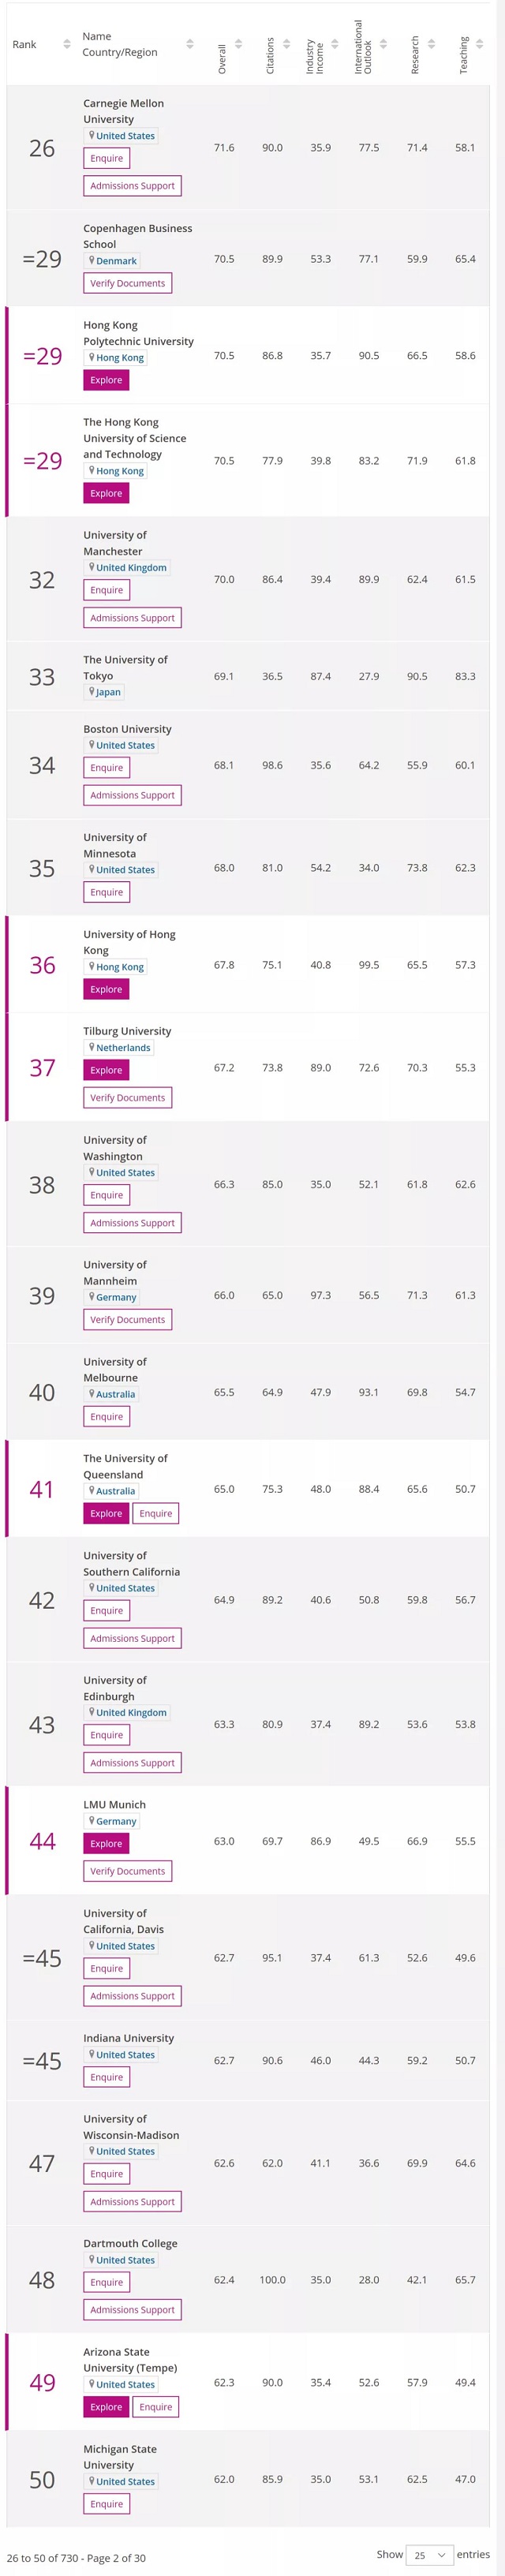 全球商科和经济类专业最好的50所大学盘点